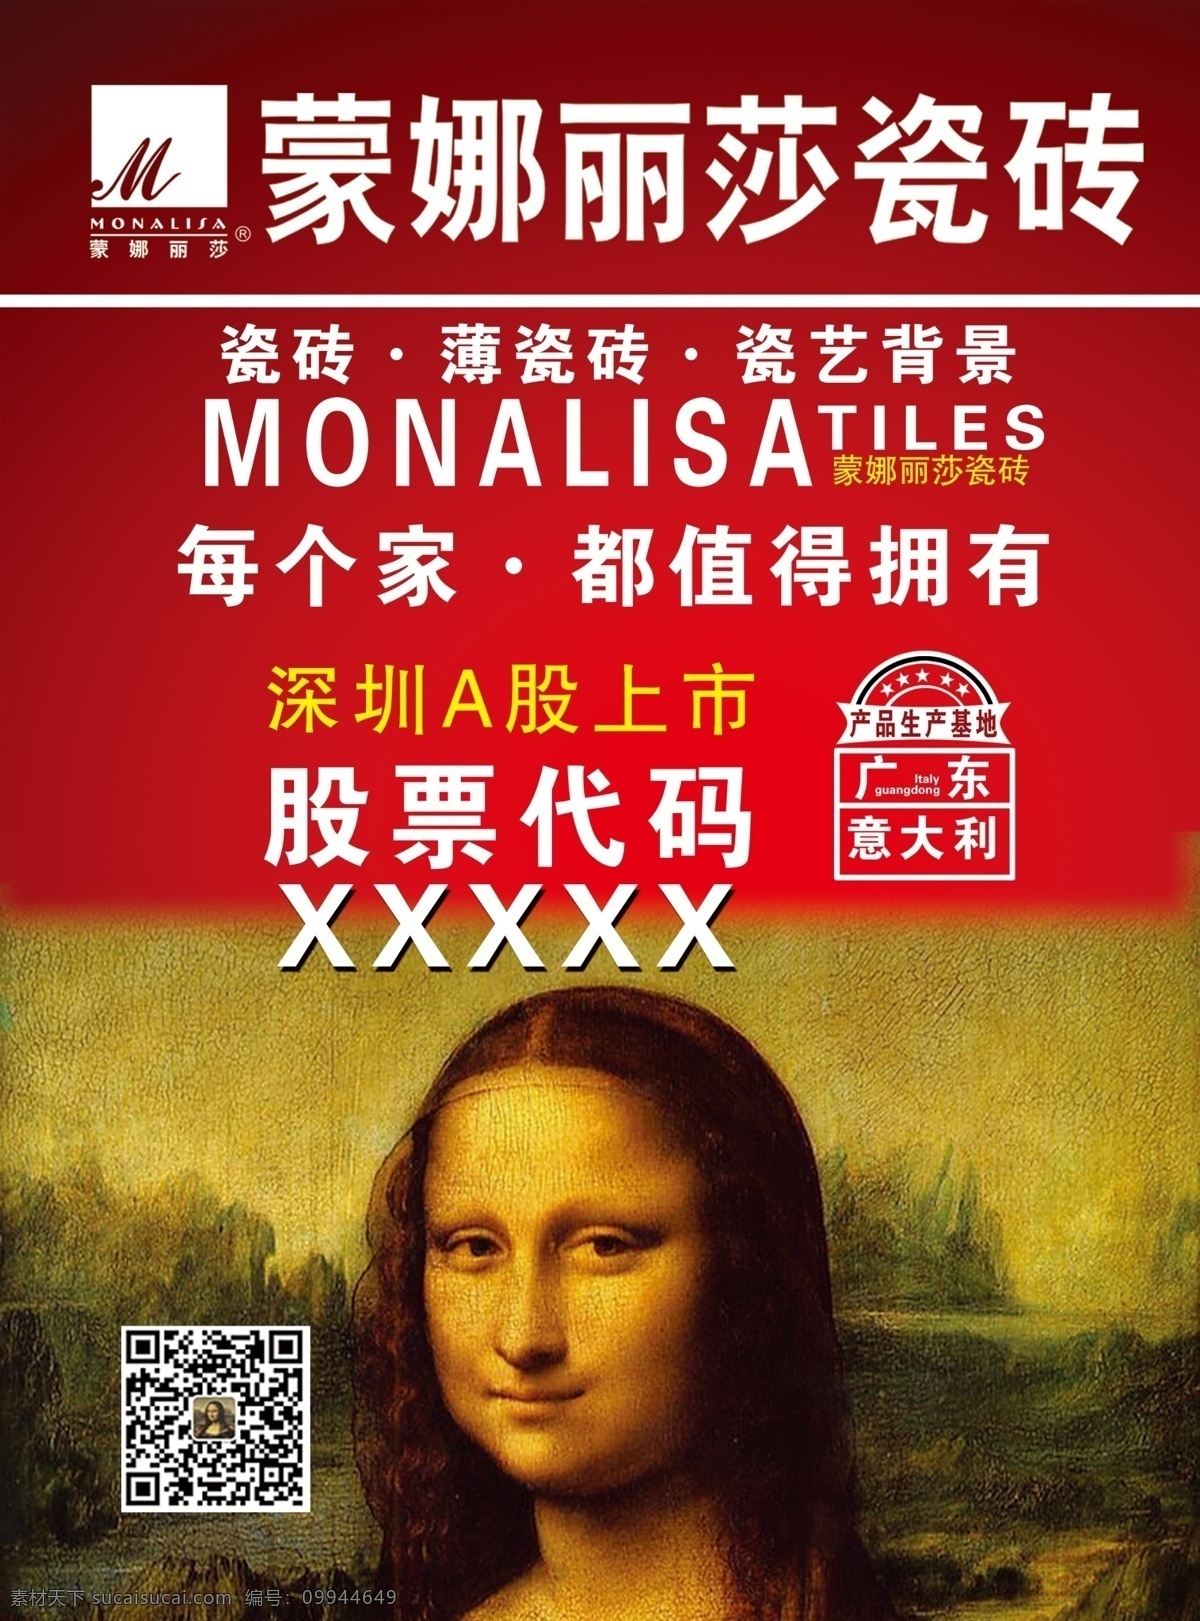 蒙娜丽莎瓷砖 蒙娜丽莎 瓷砖 瓷砖海报 瓷砖广告